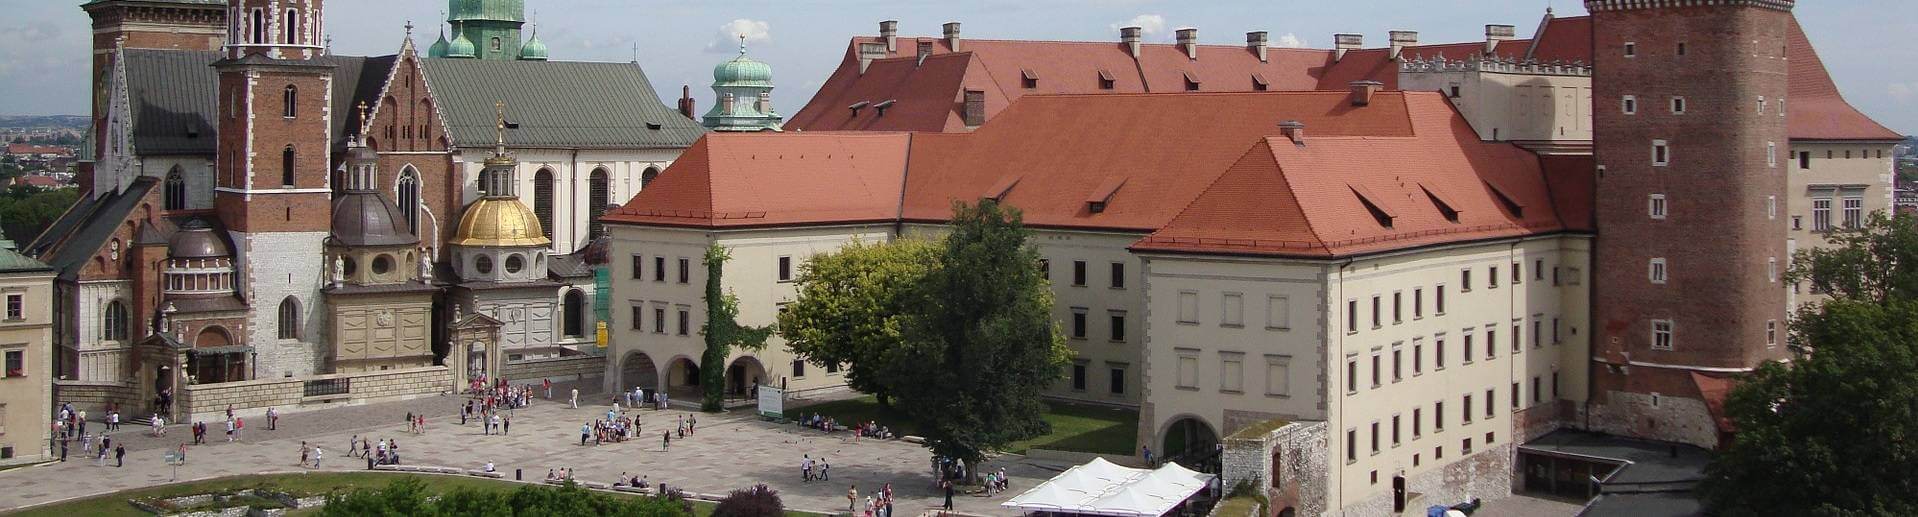 Wzgórze i zamek na Wawelu